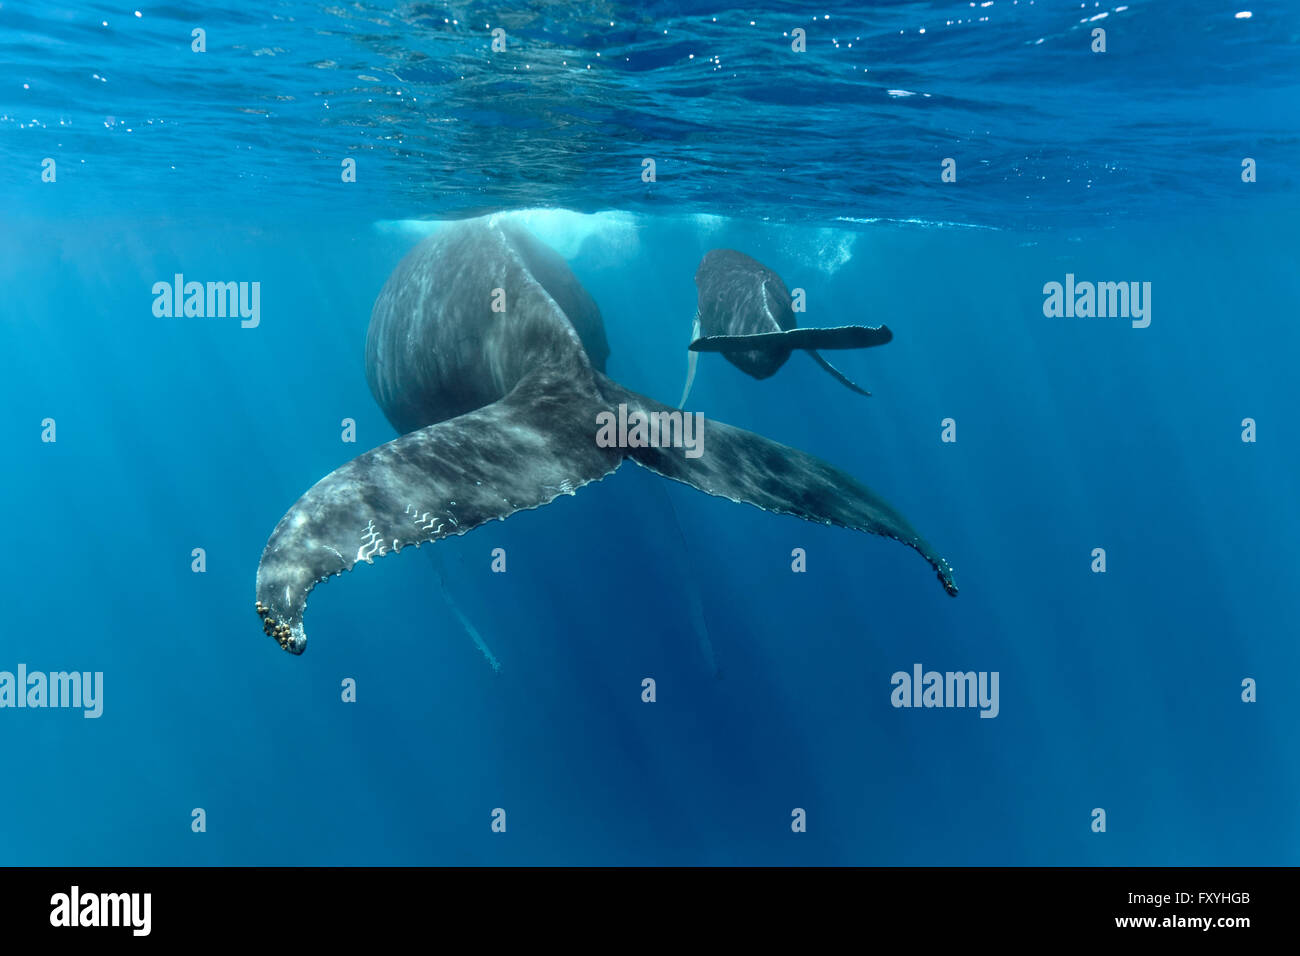 La ballena jorobada (Megaptera novaeangliae), hembra, de vaca, con jóvenes, la pantorrilla, en el mar abierto, Banco de plata, plata y Banco de Navidad Foto de stock